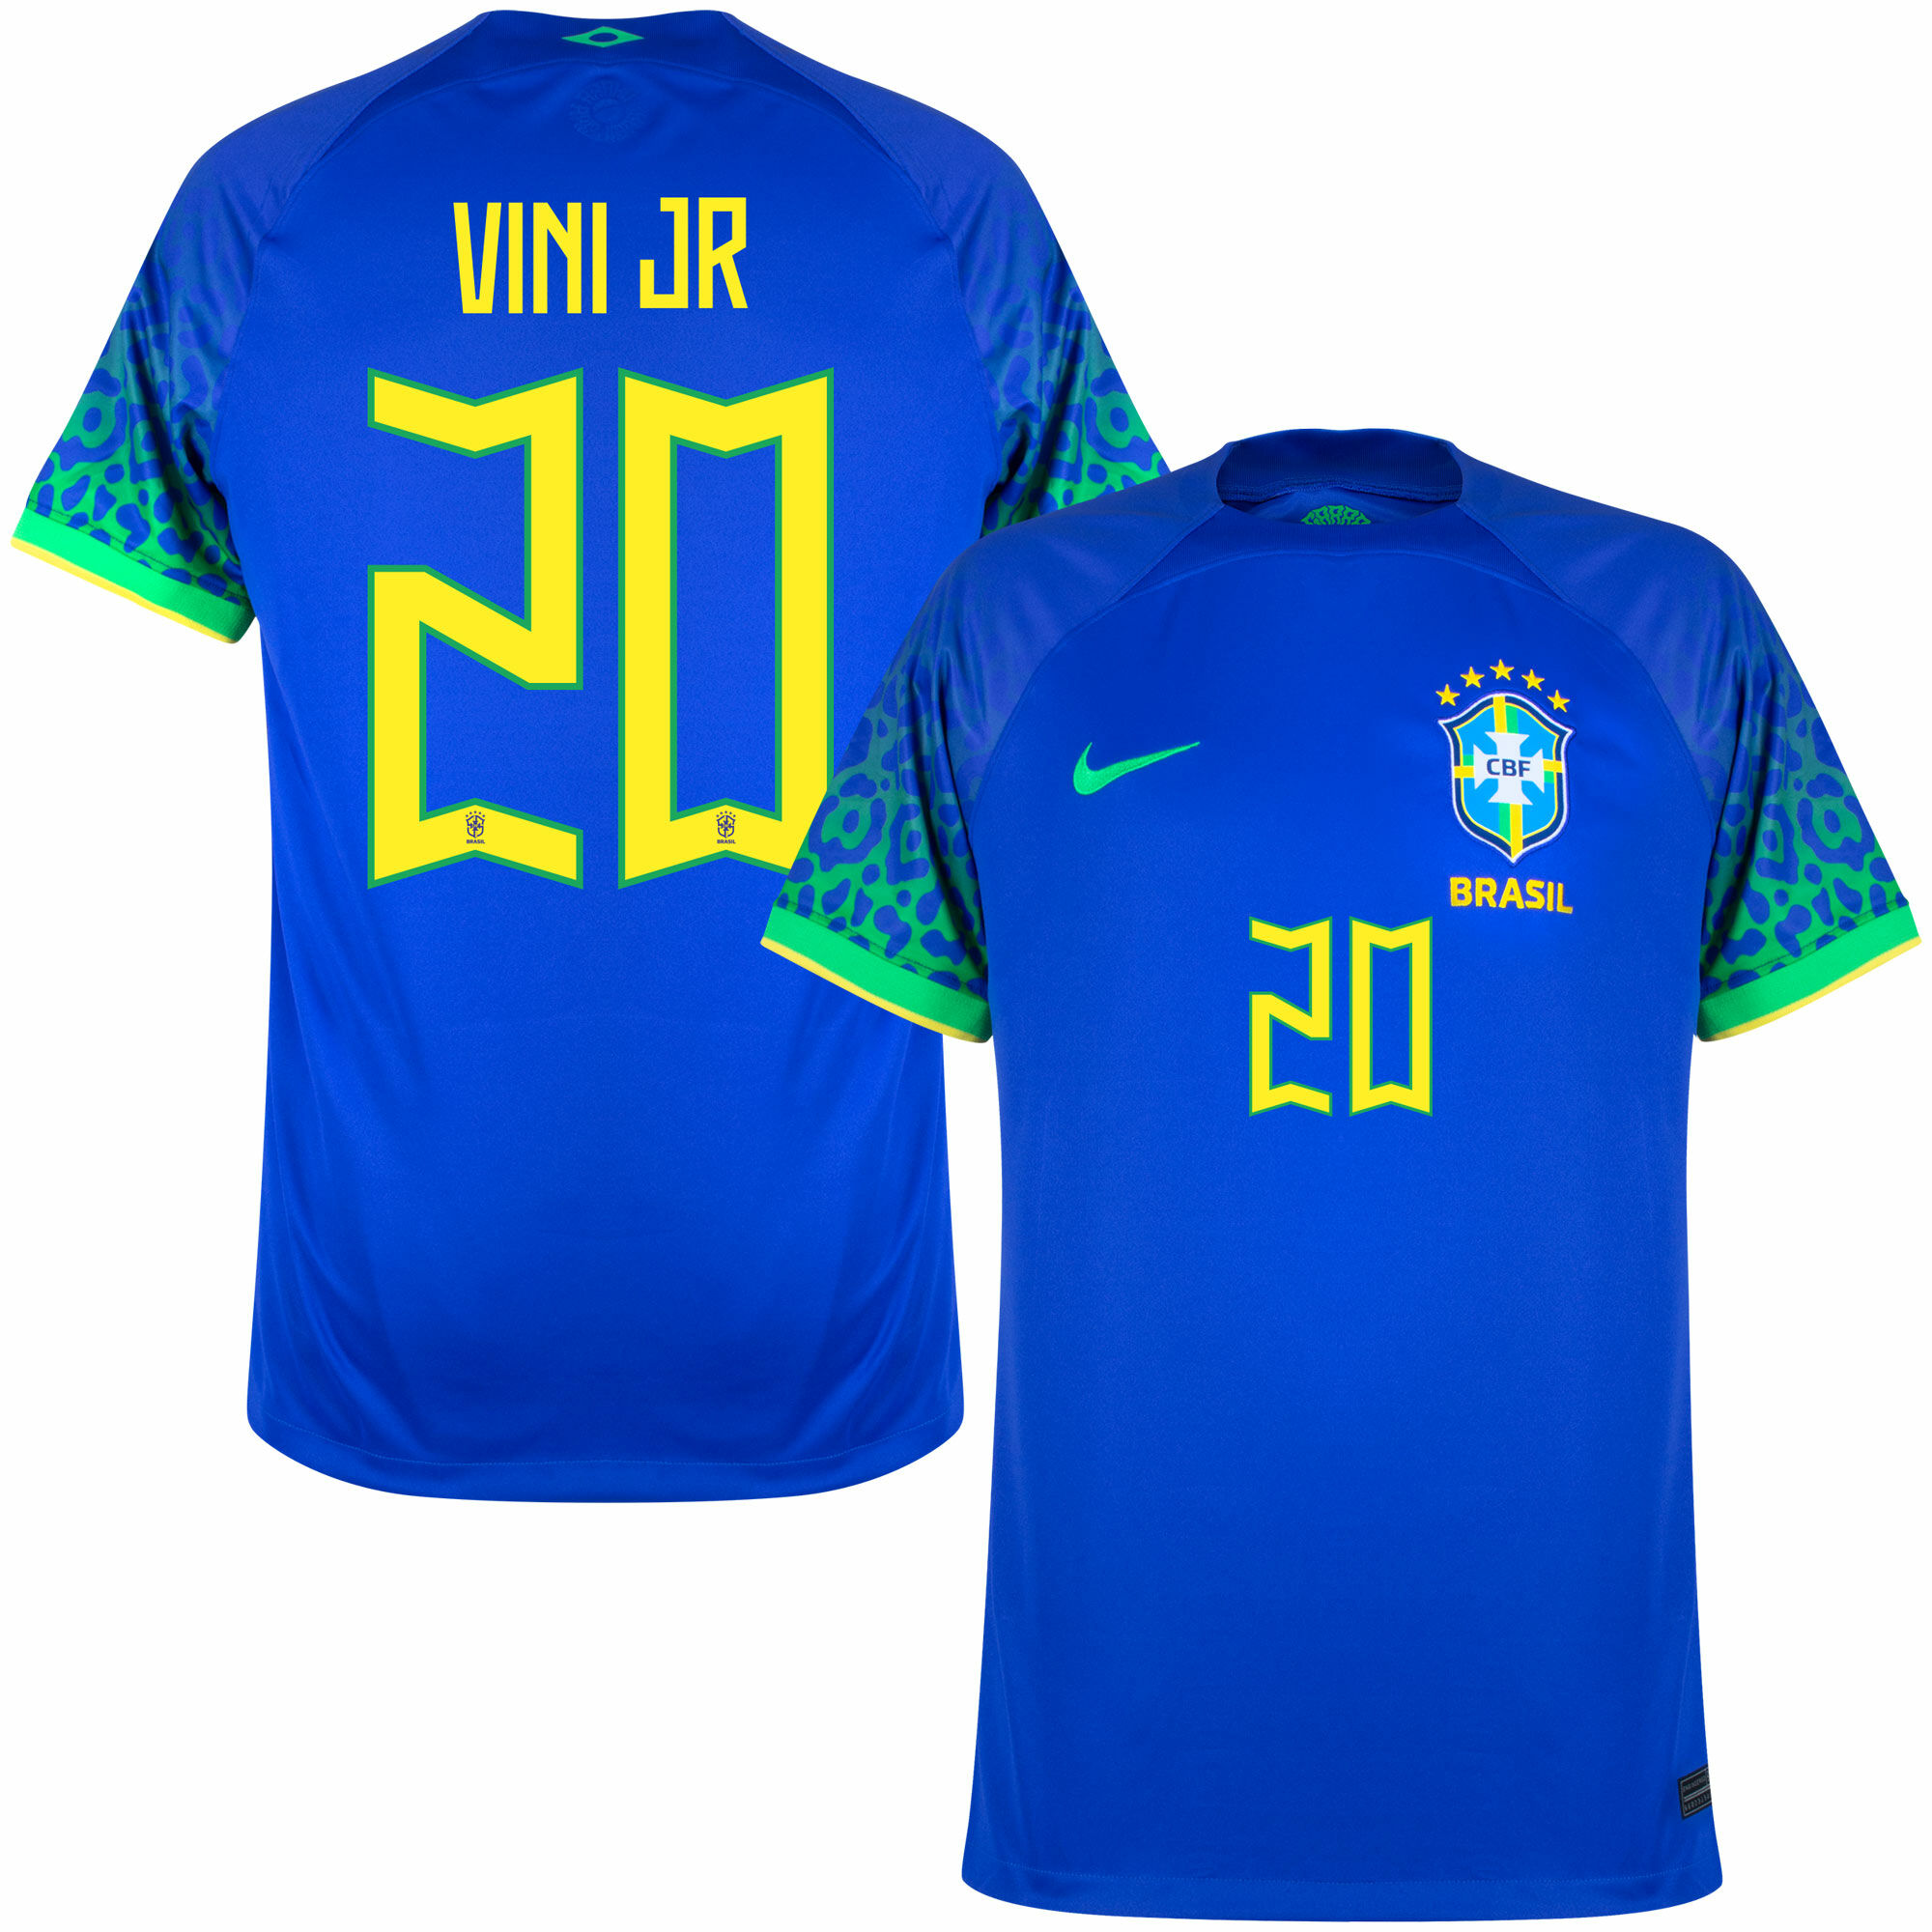 Brazílie - Dres fotbalový - oficiální potisk, Vinícius Júnior, číslo 20, sezóna 2022/23, modrý, venkovní